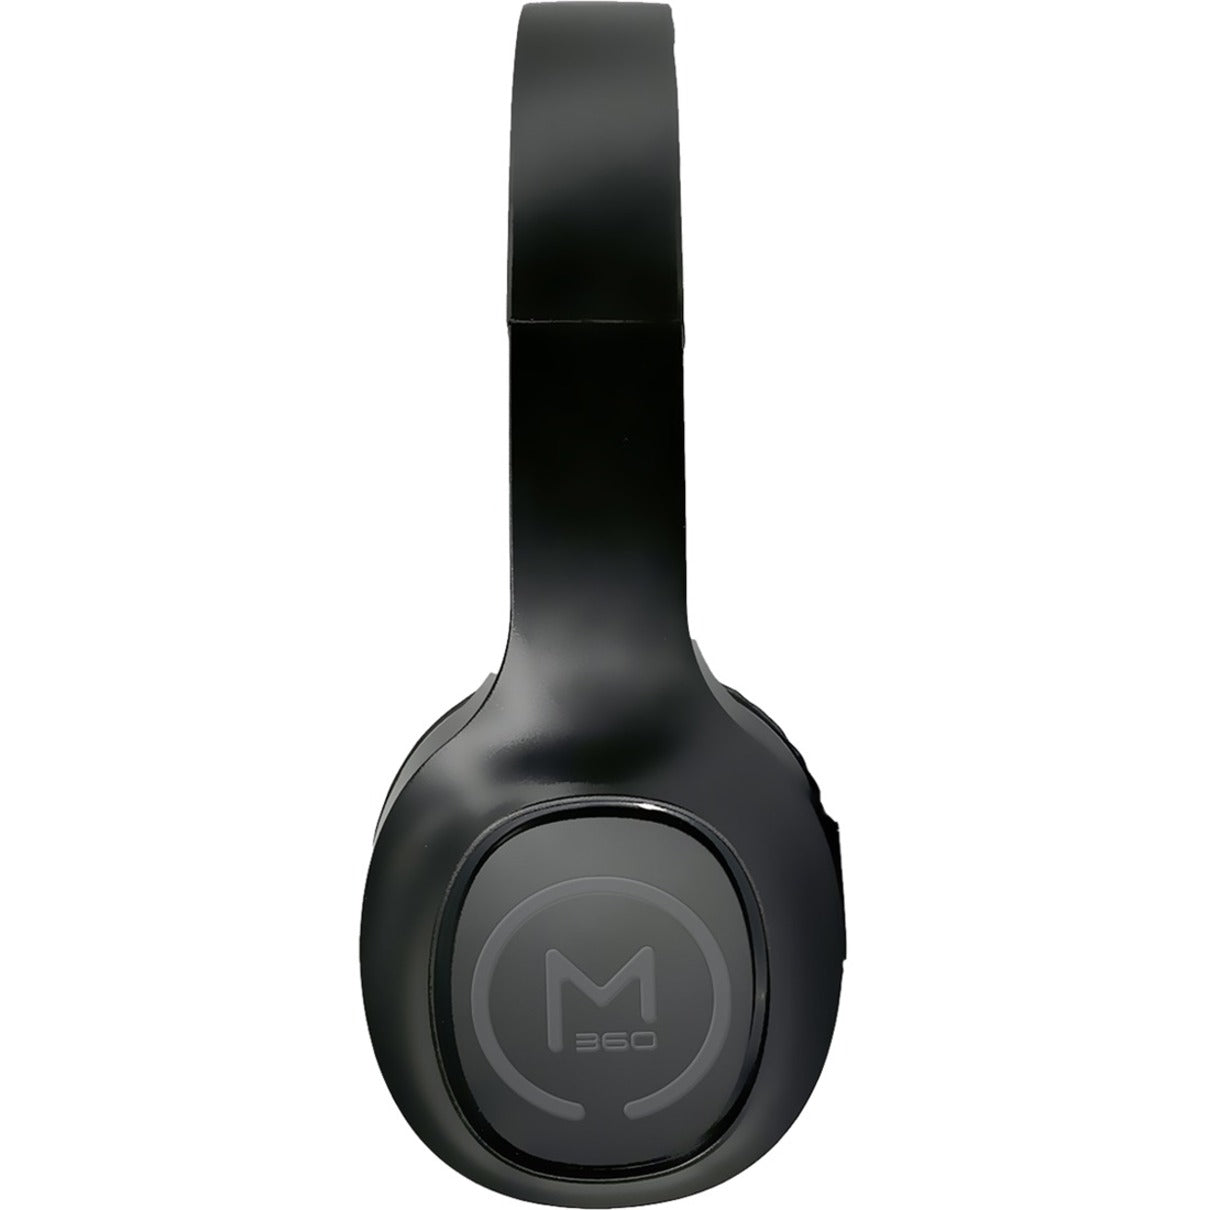 مورفيوس 360 إتش بي 4500ب سماعة لاسلكية، ستيريو، مريحة، أسود مع تفاصيل رمادية شركة: Morpheus